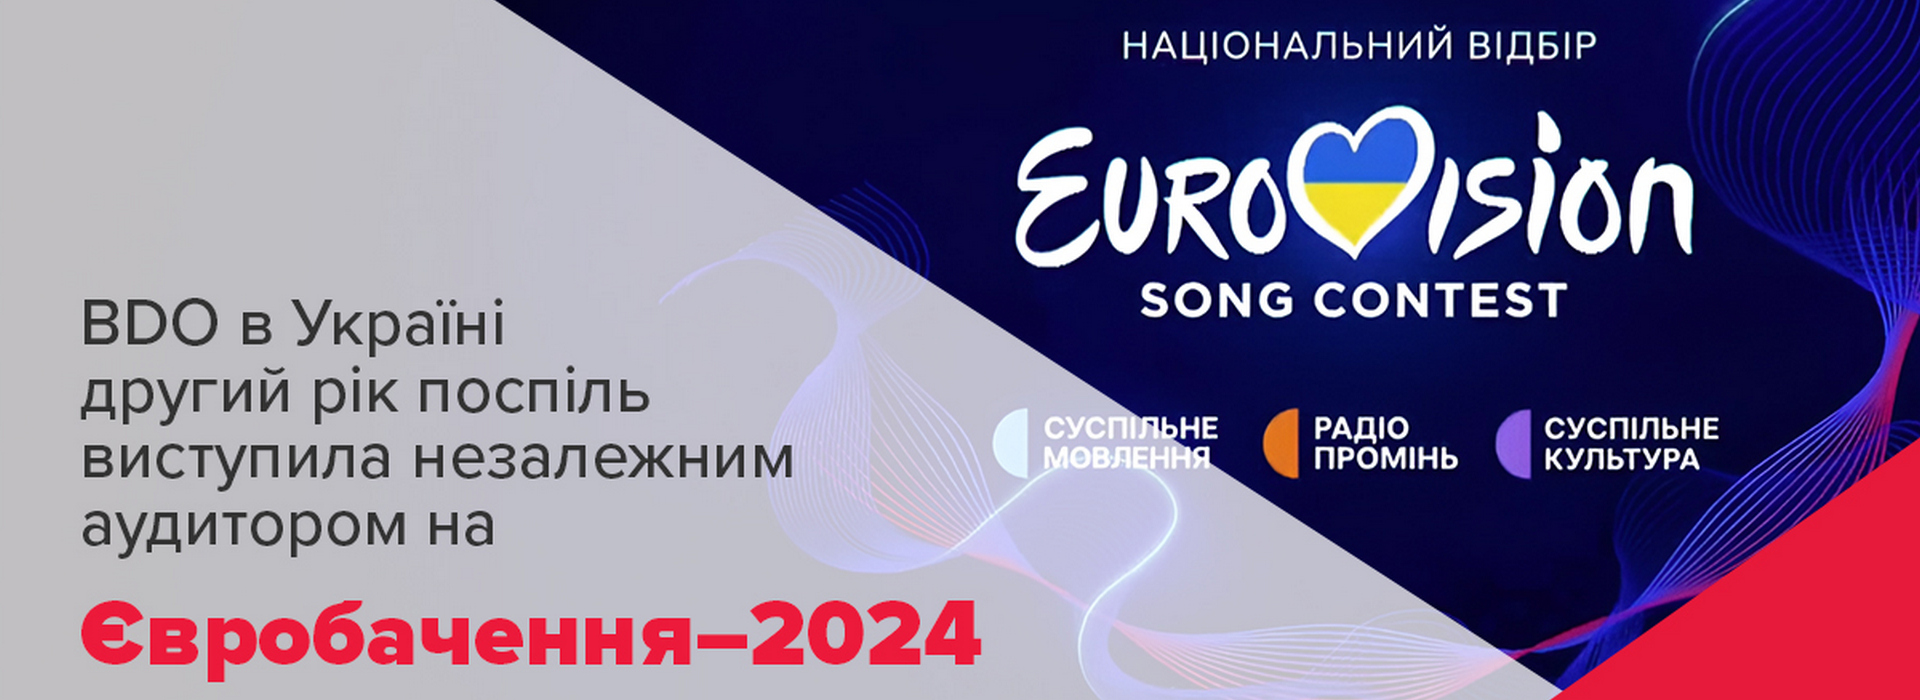 BDO в Україні другий рік поспіль виступила незалежним аудитором на Євробачення–2024